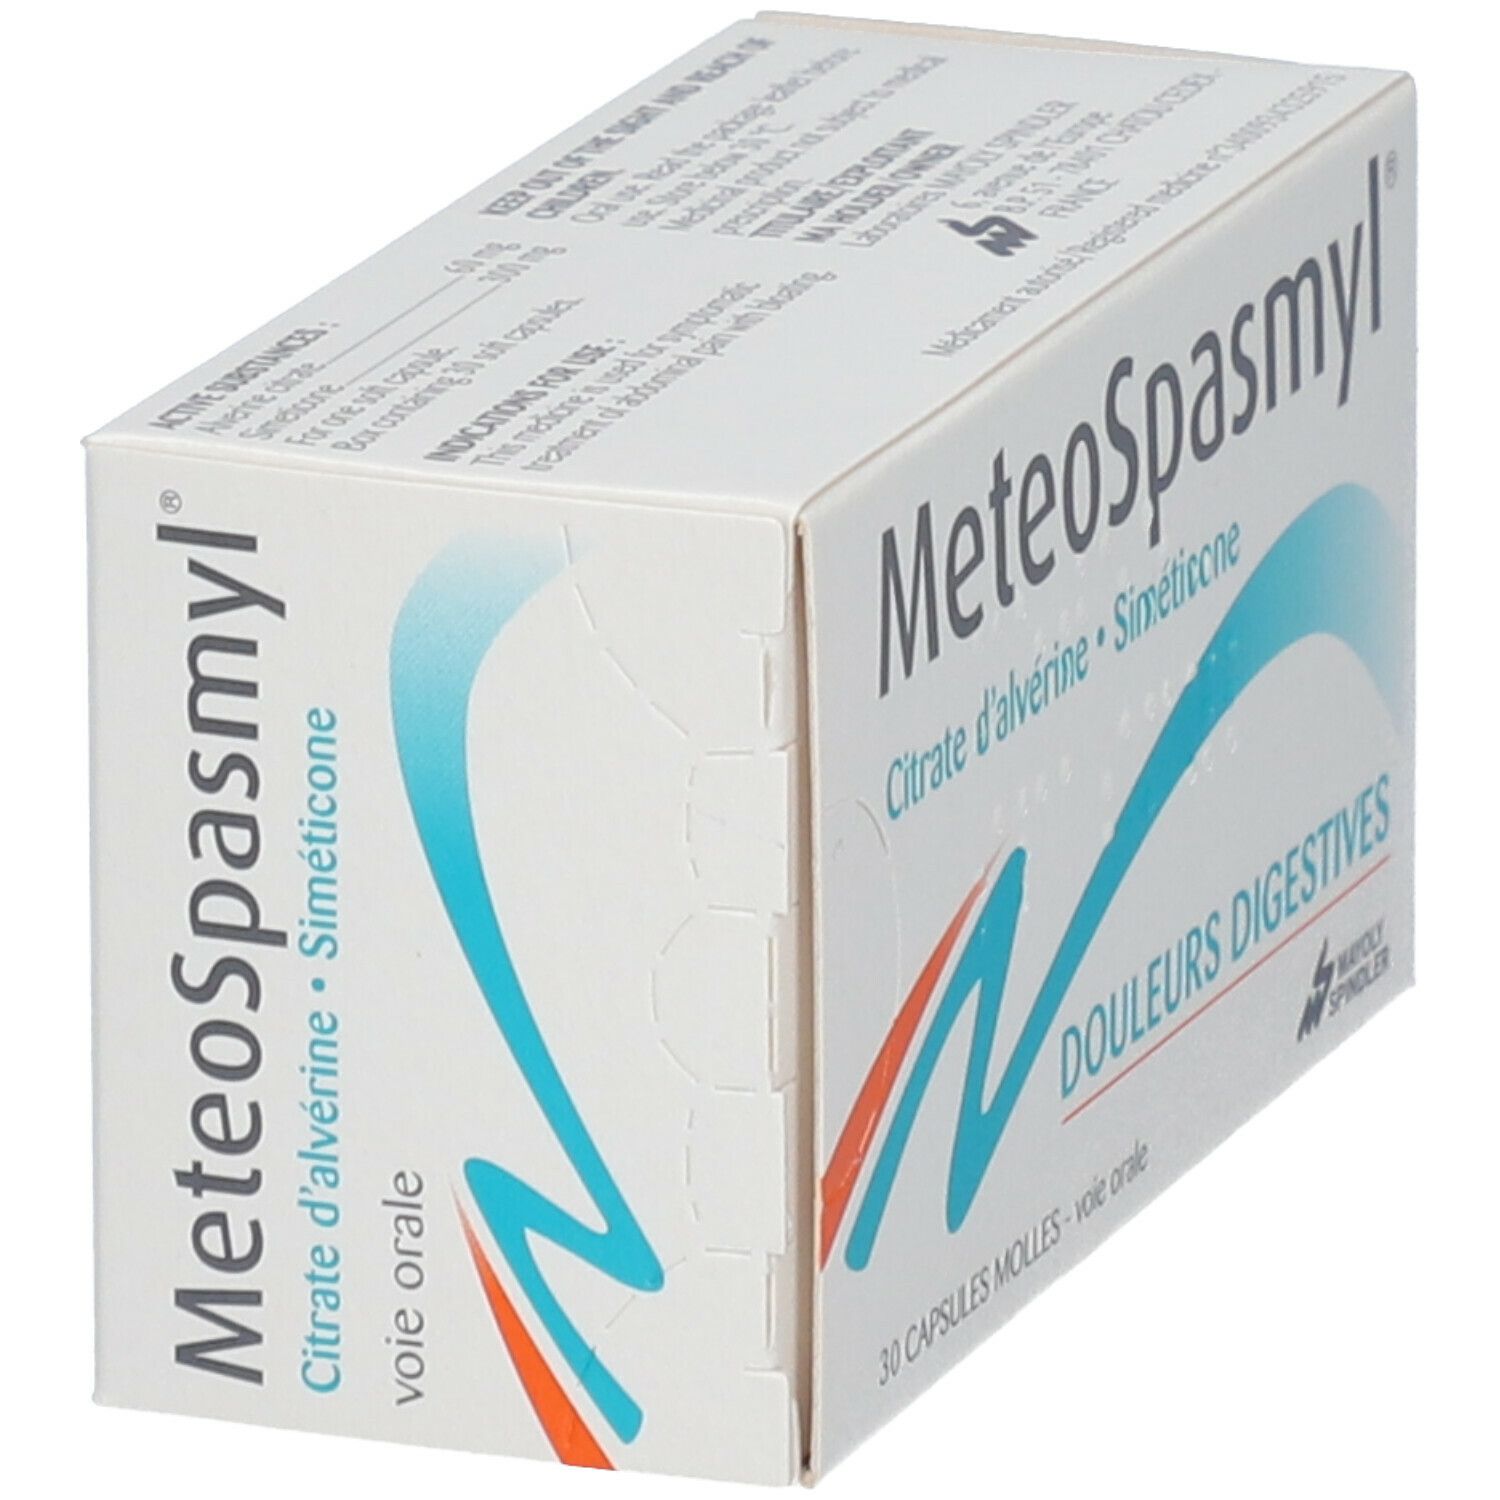 Meteospasmyl®